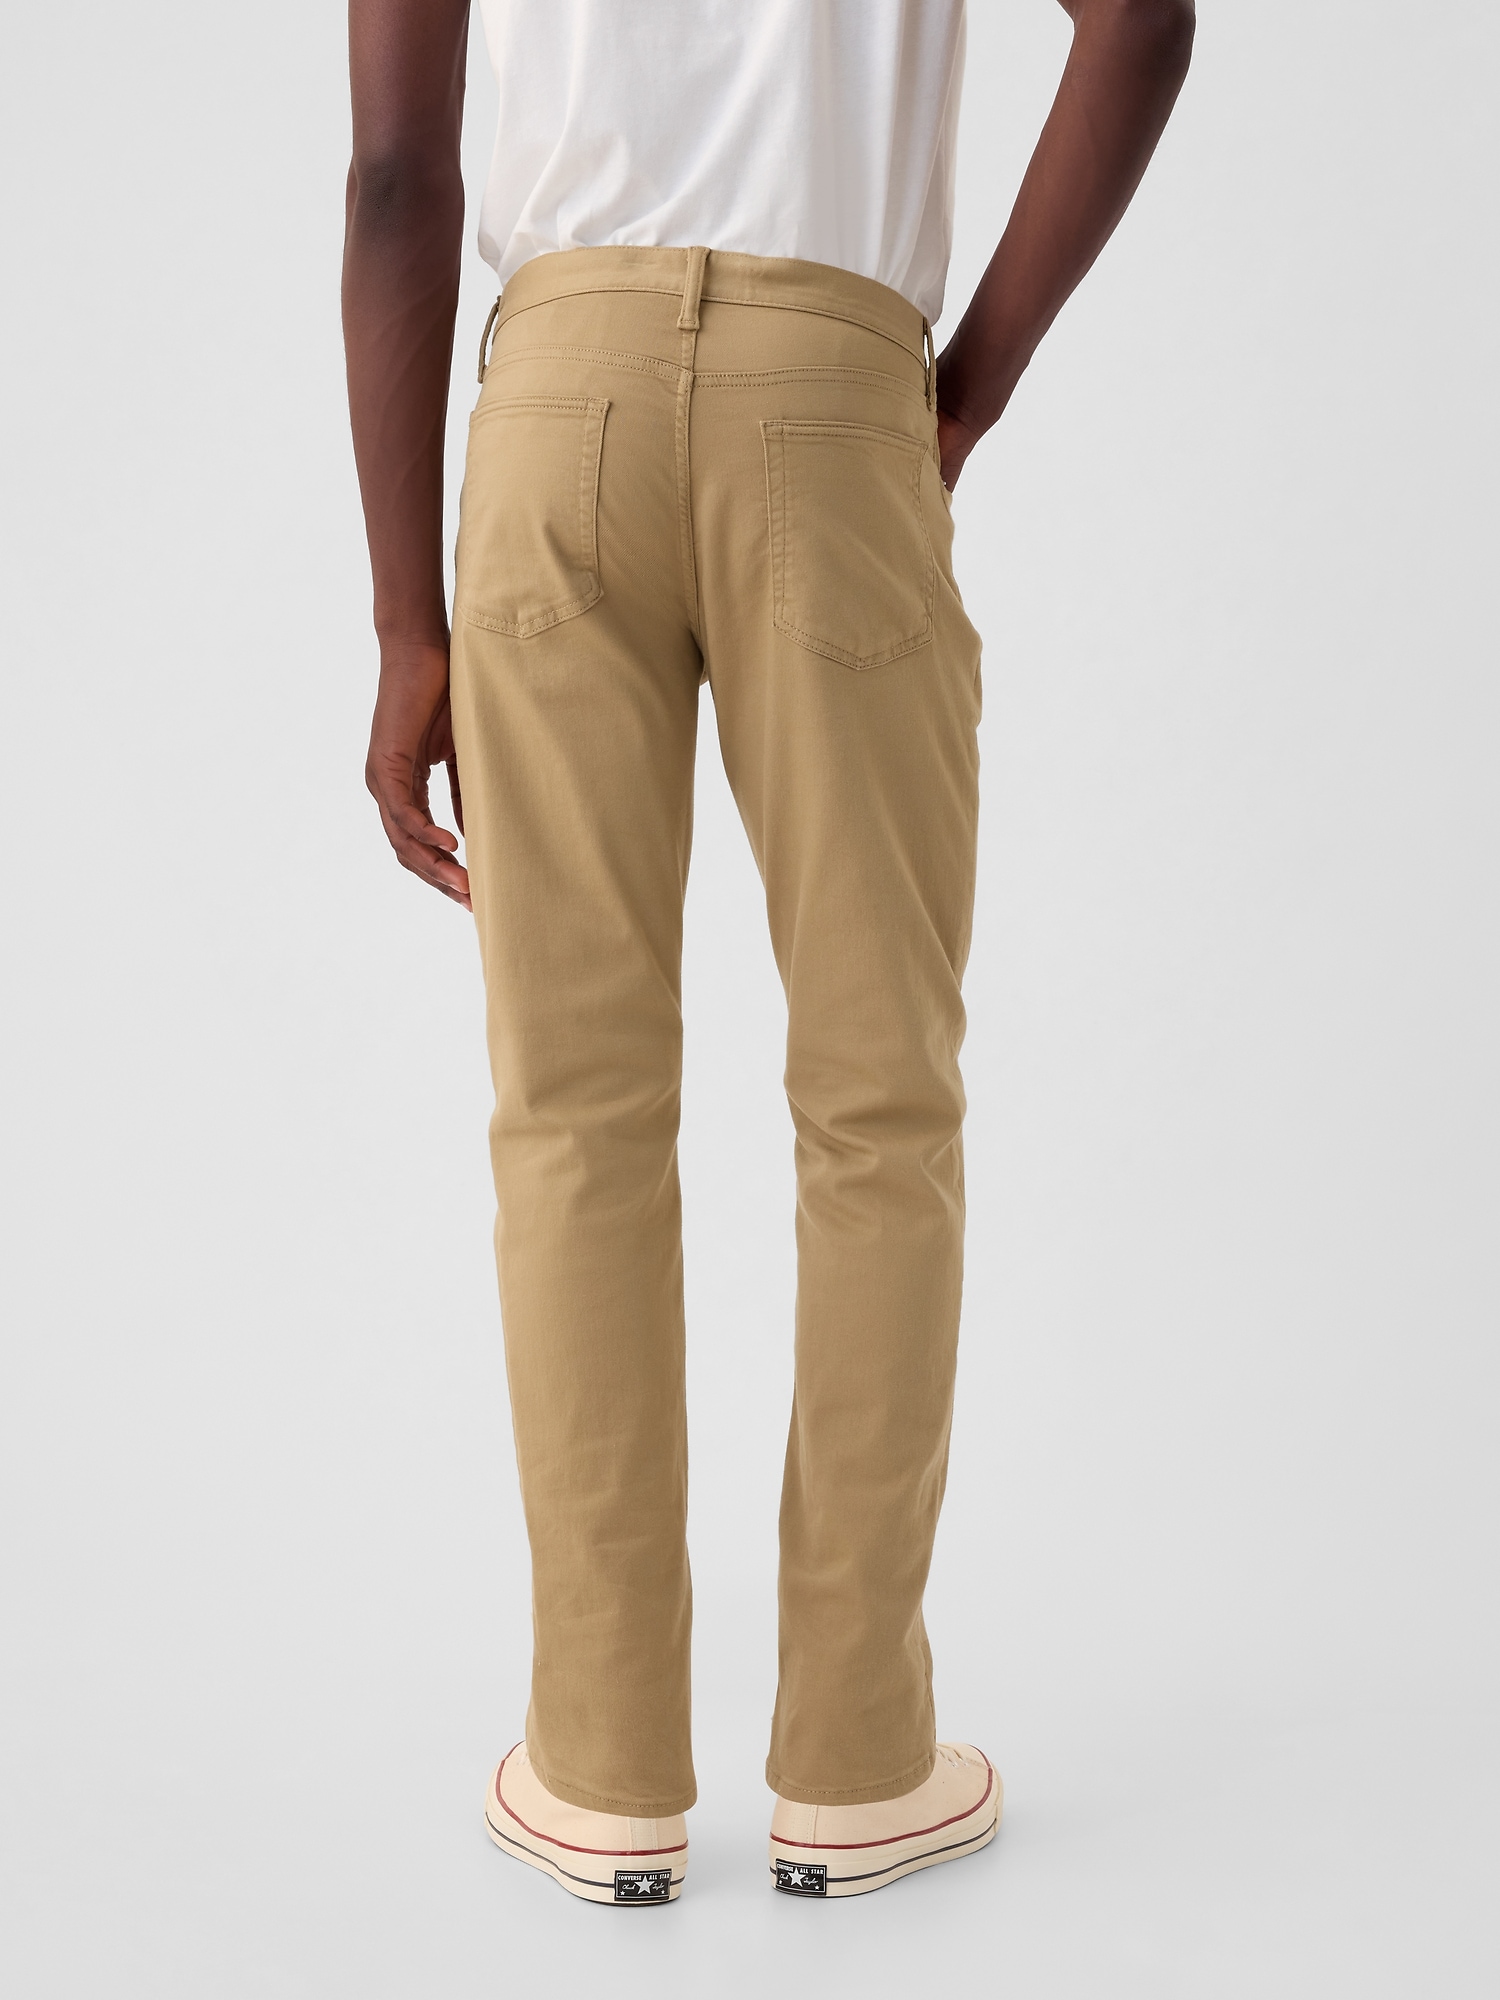 갭 City Jeans in Slim Fit with GapFlex Max